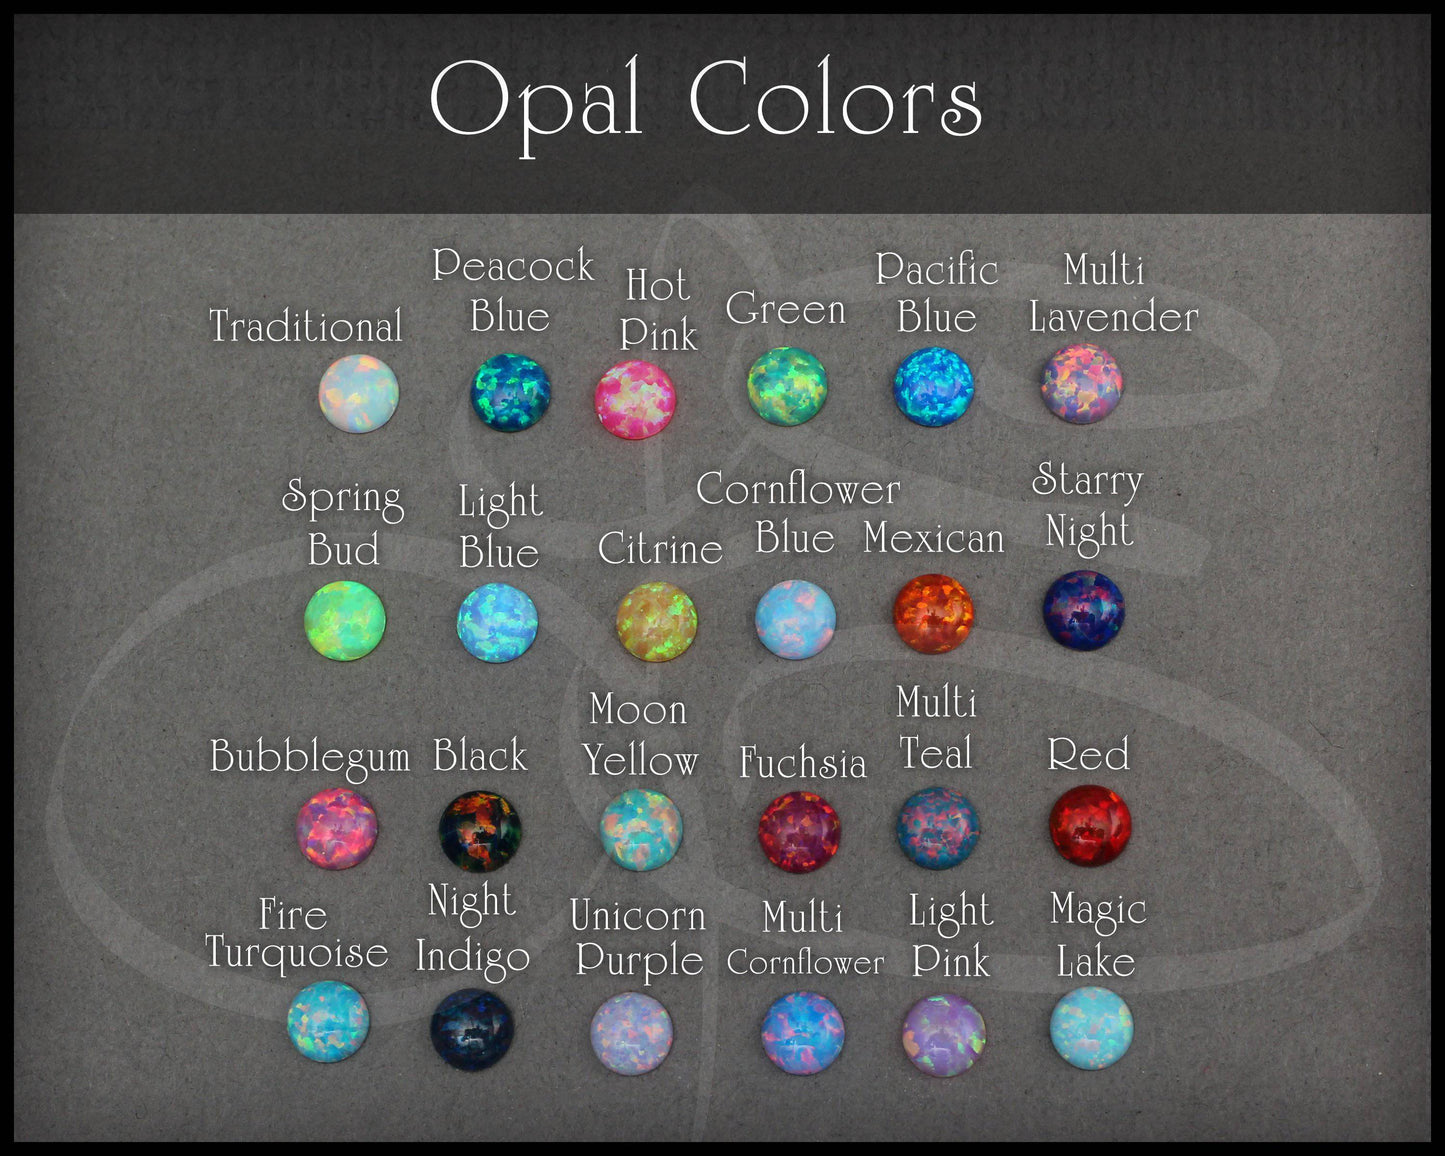 Single Opal Stud Earring (4mm) - LE Jewelry Designs